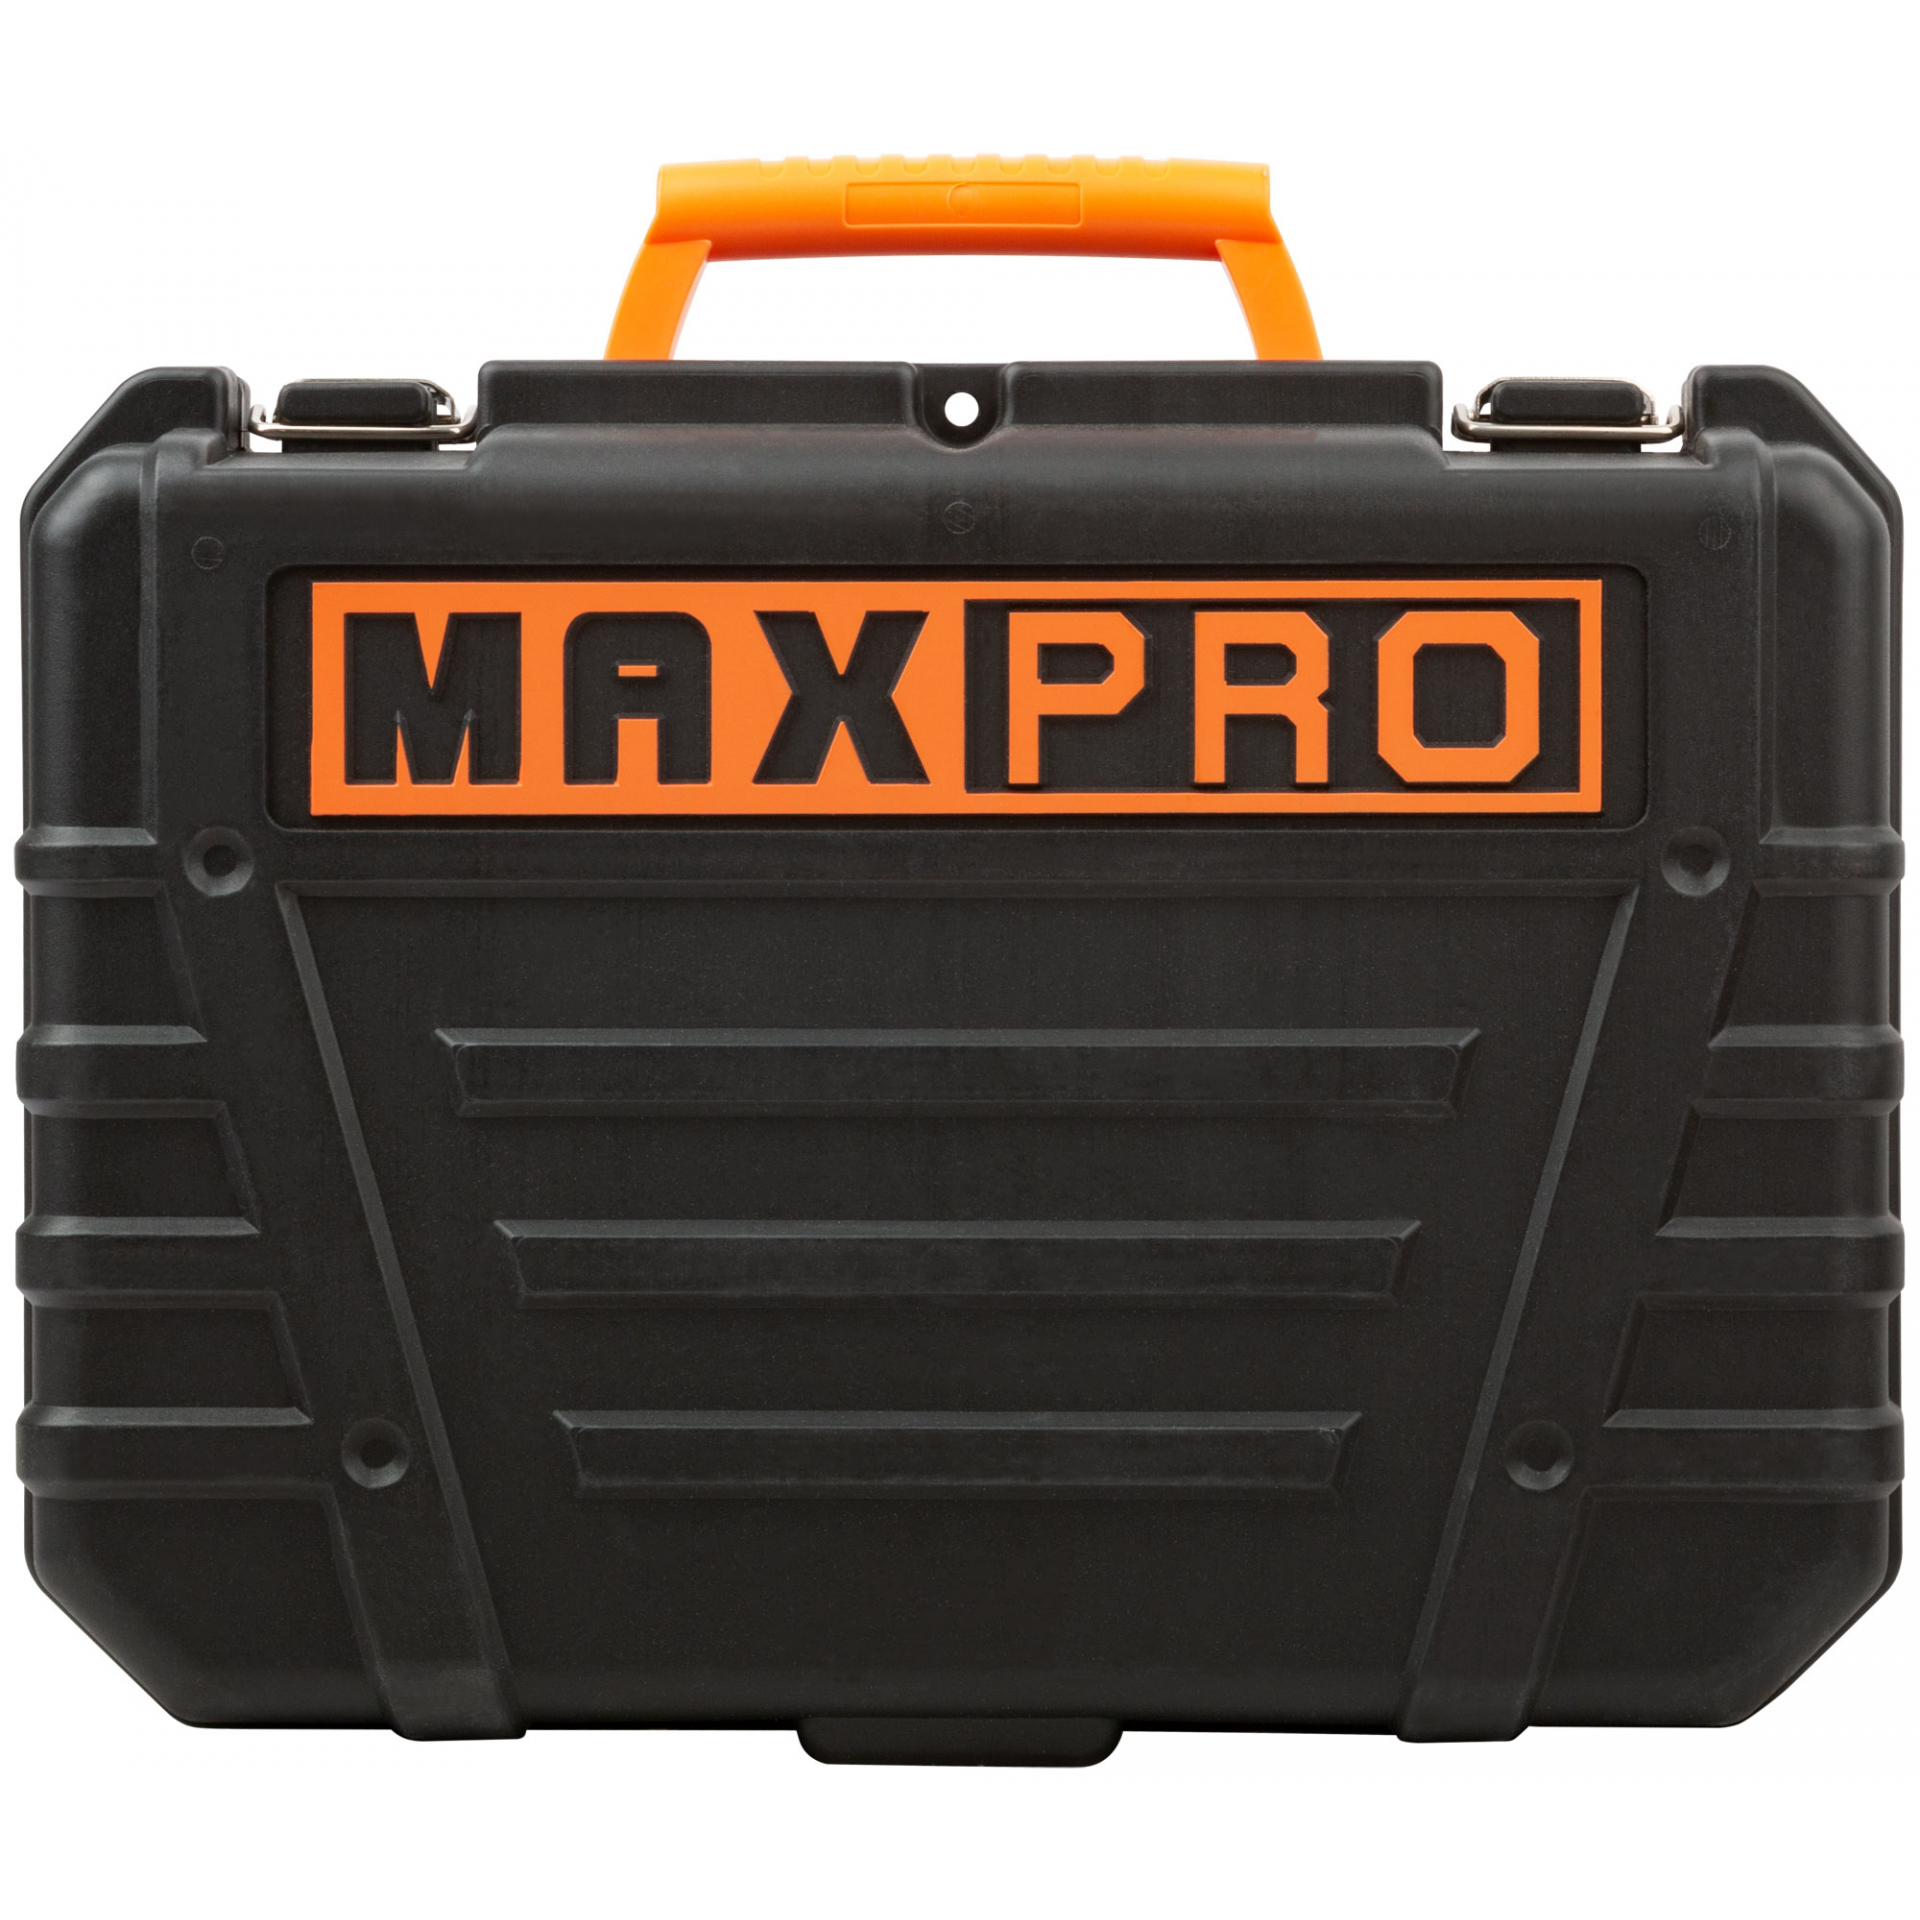 MAX-PRO Перфоратор монтажный 620 Вт; 0-1000об/мин; 2,5Дж; 3 режима; Д/Б/М-30/24/13; 2,8кг; SDS-PLUS; антивибрационная ручка; резиновые вставки; резино